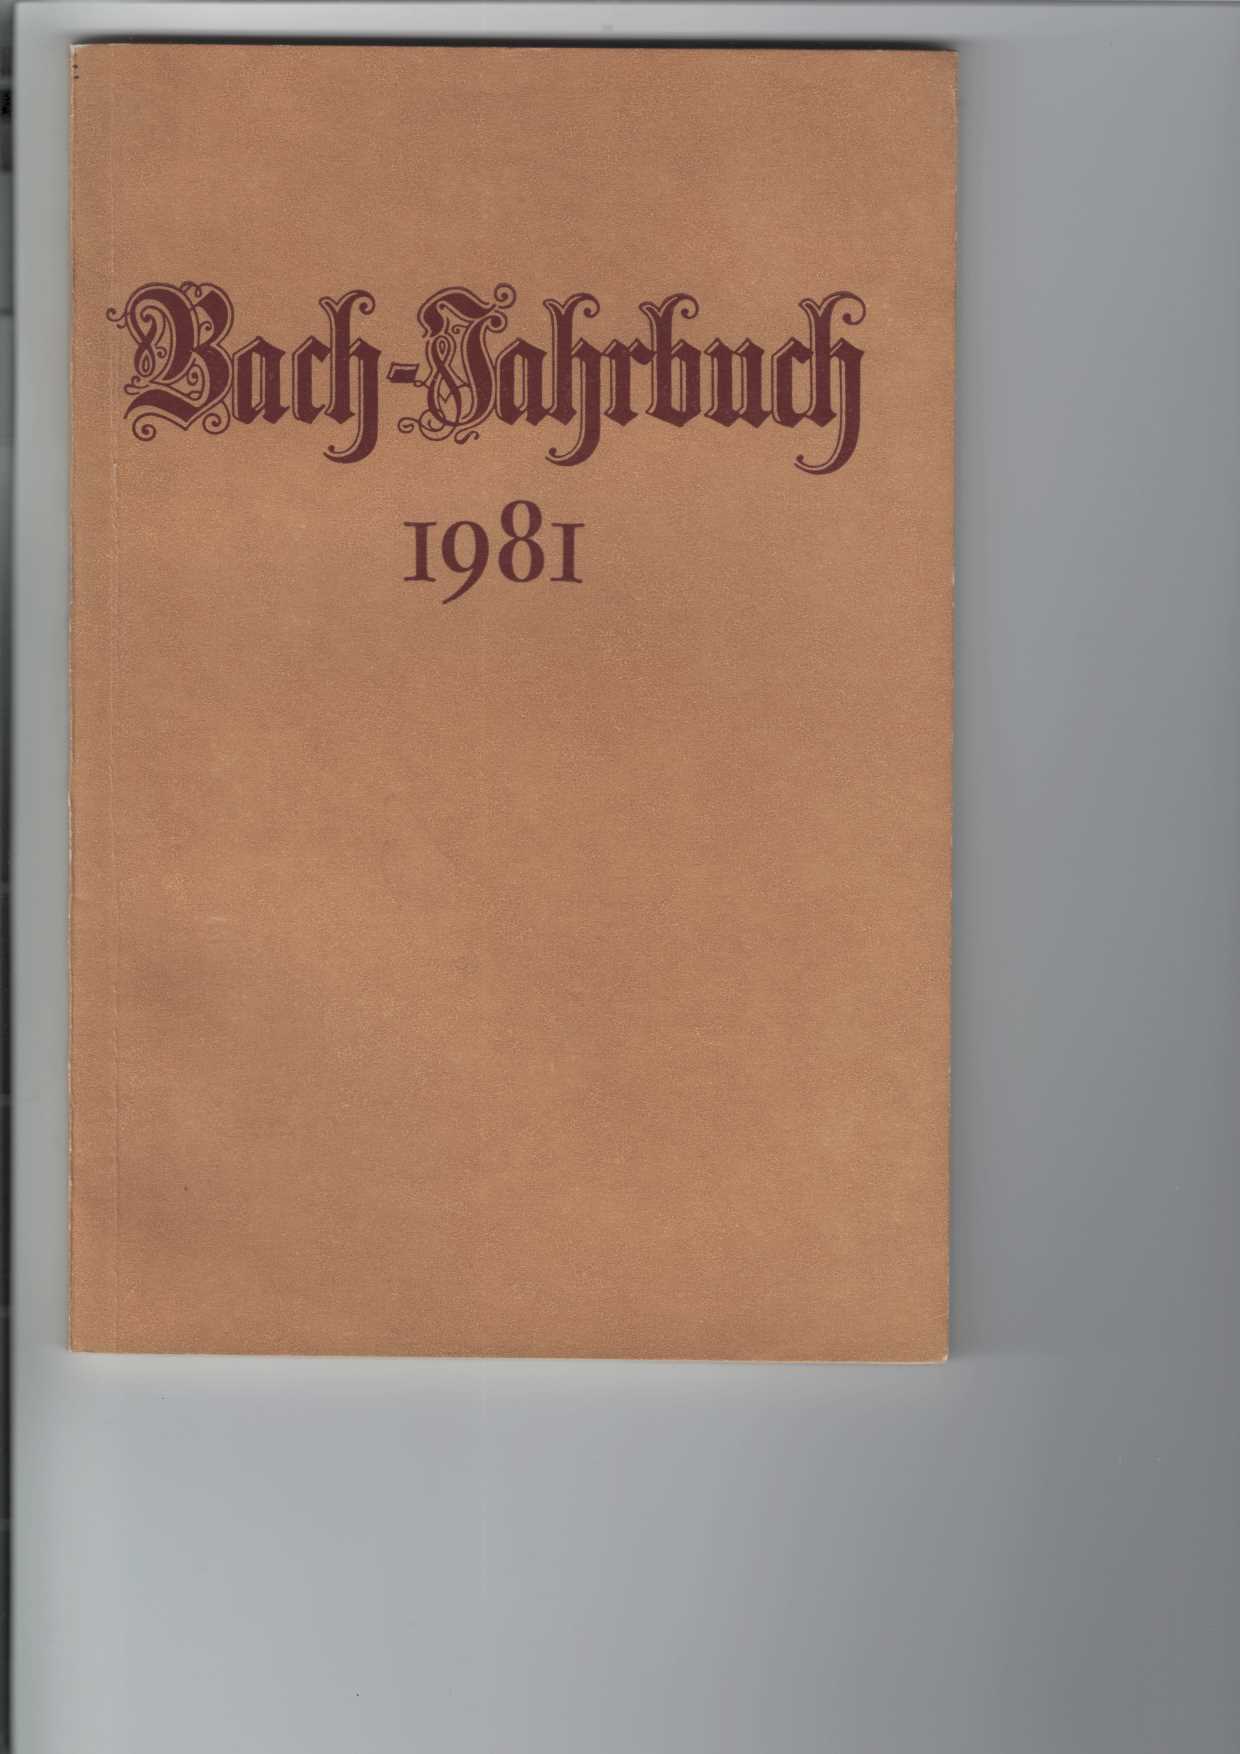   Bach-Jahrbuch 1981. 